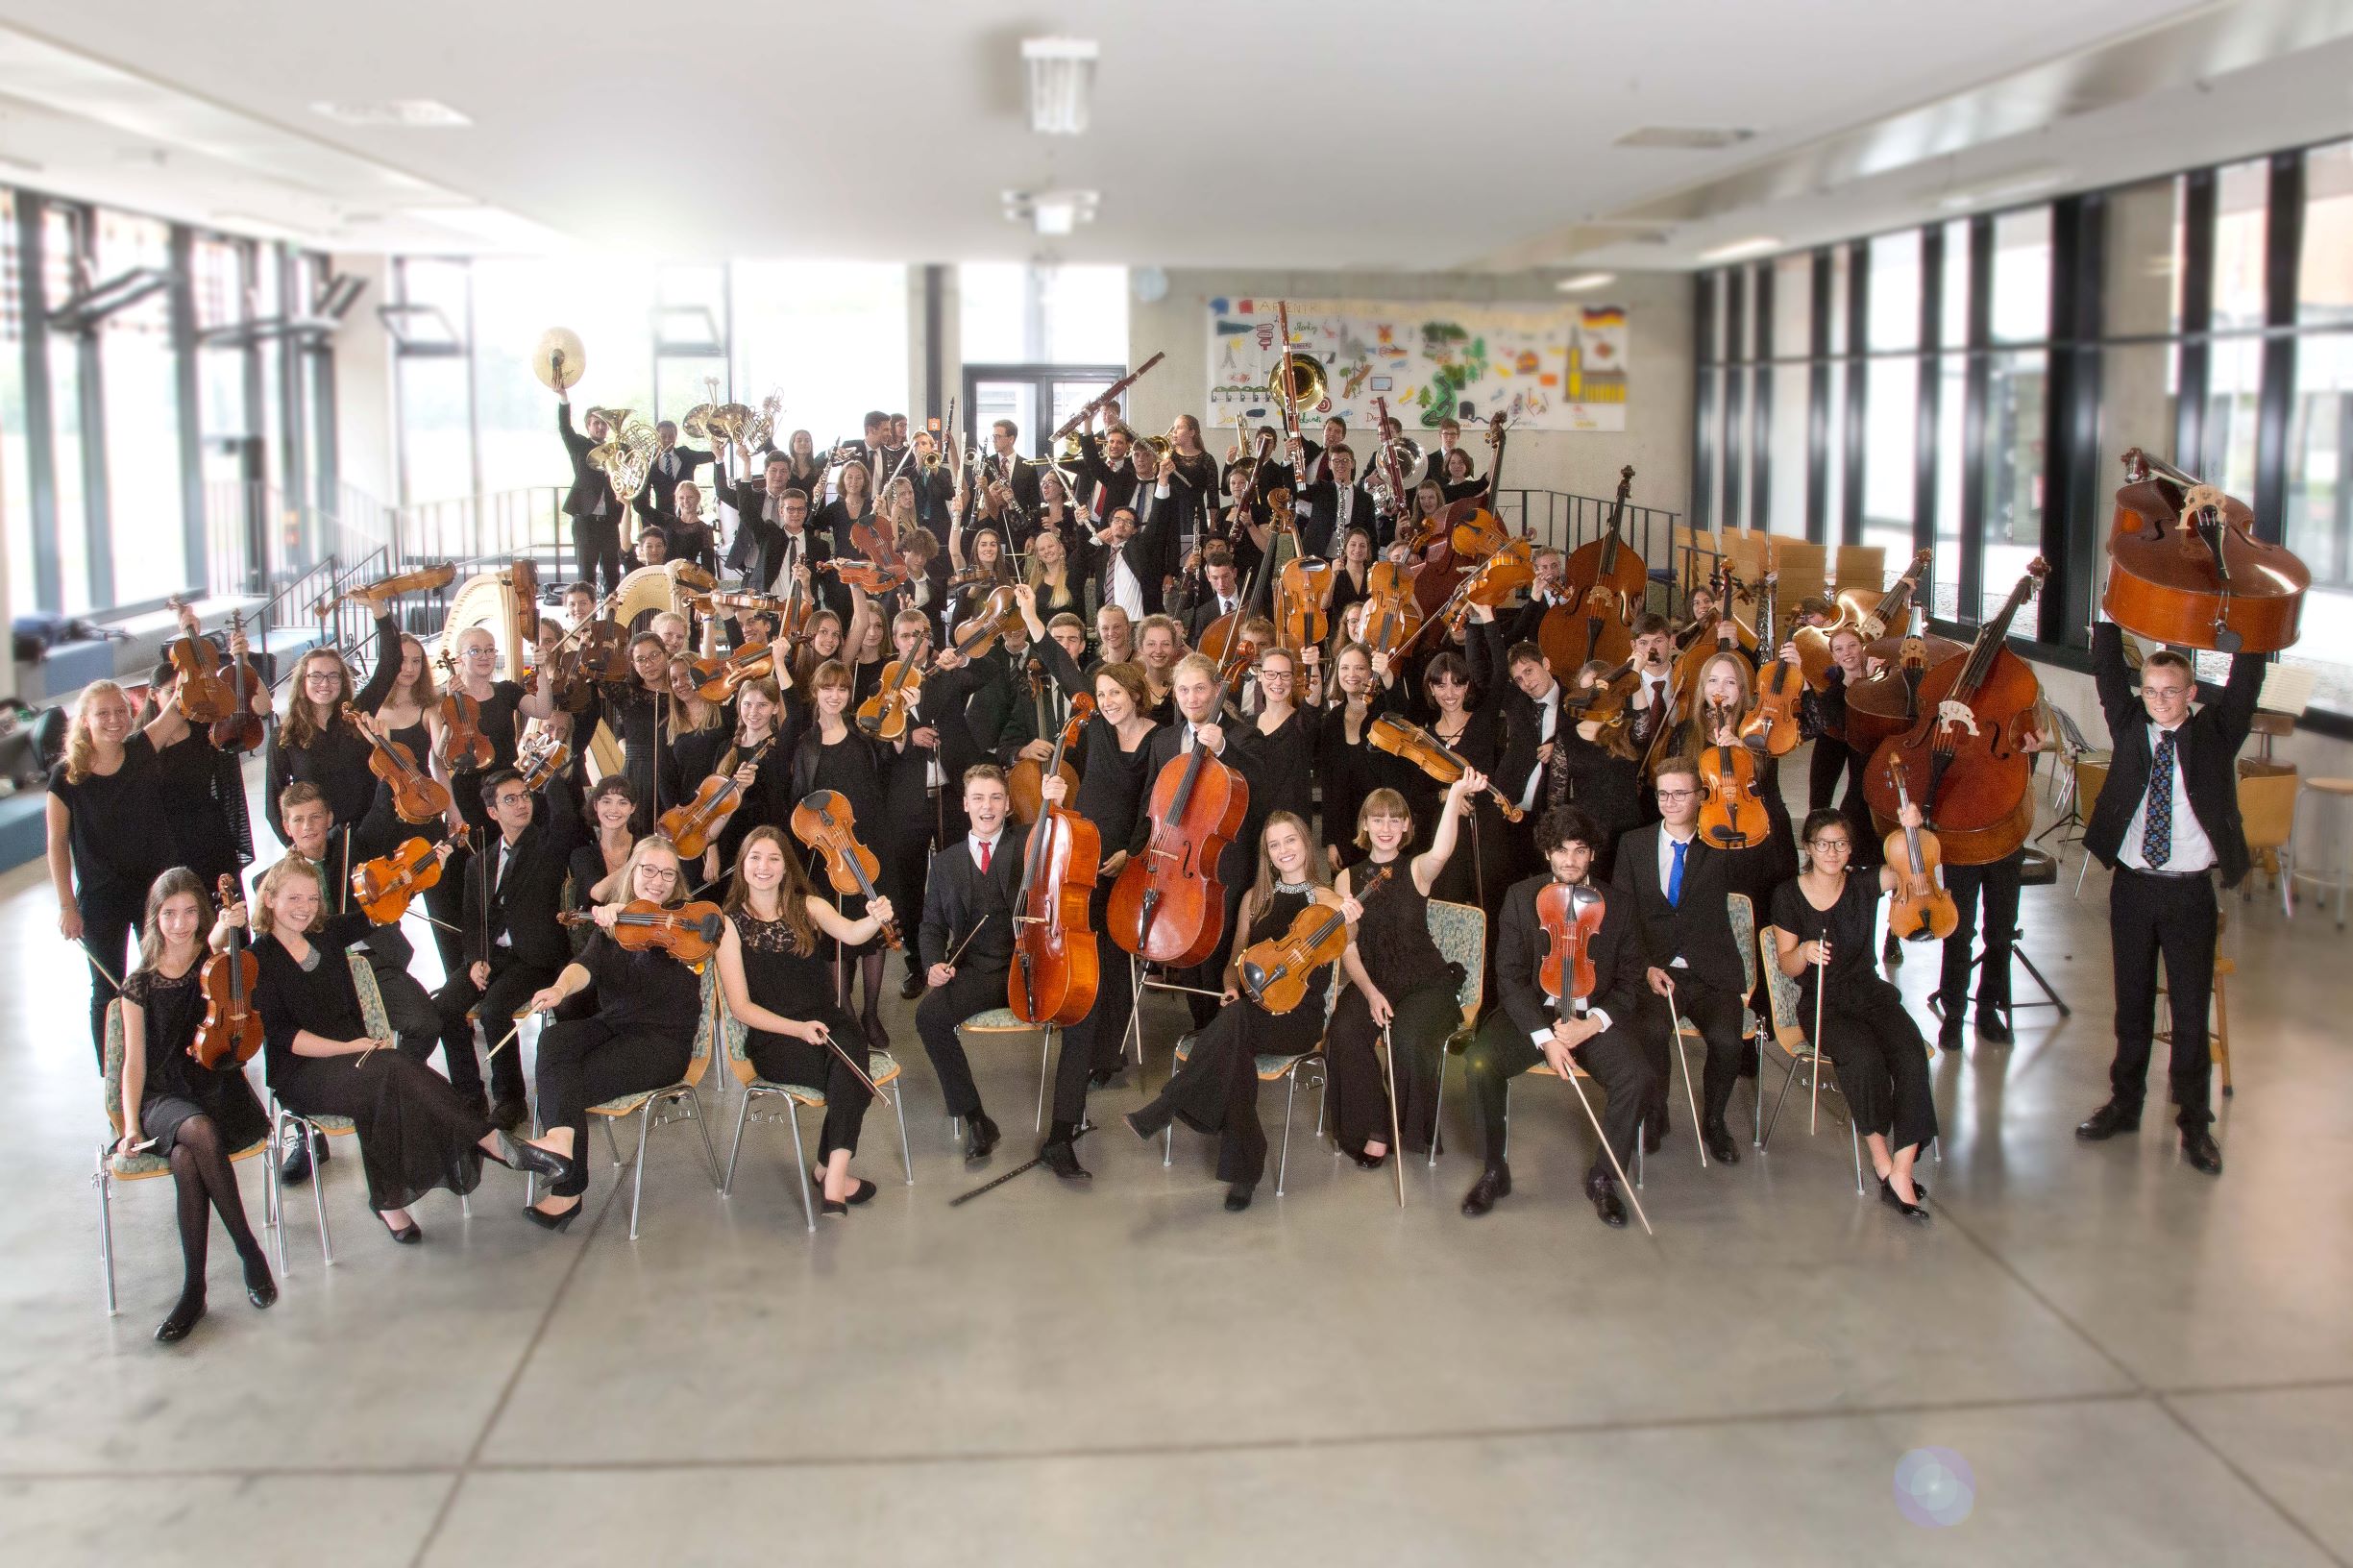 Das Schwäbische Jugendsinfonieorchester ist das musikpädagogische Exzellenz-Projekt des Bezirks Schwaben.